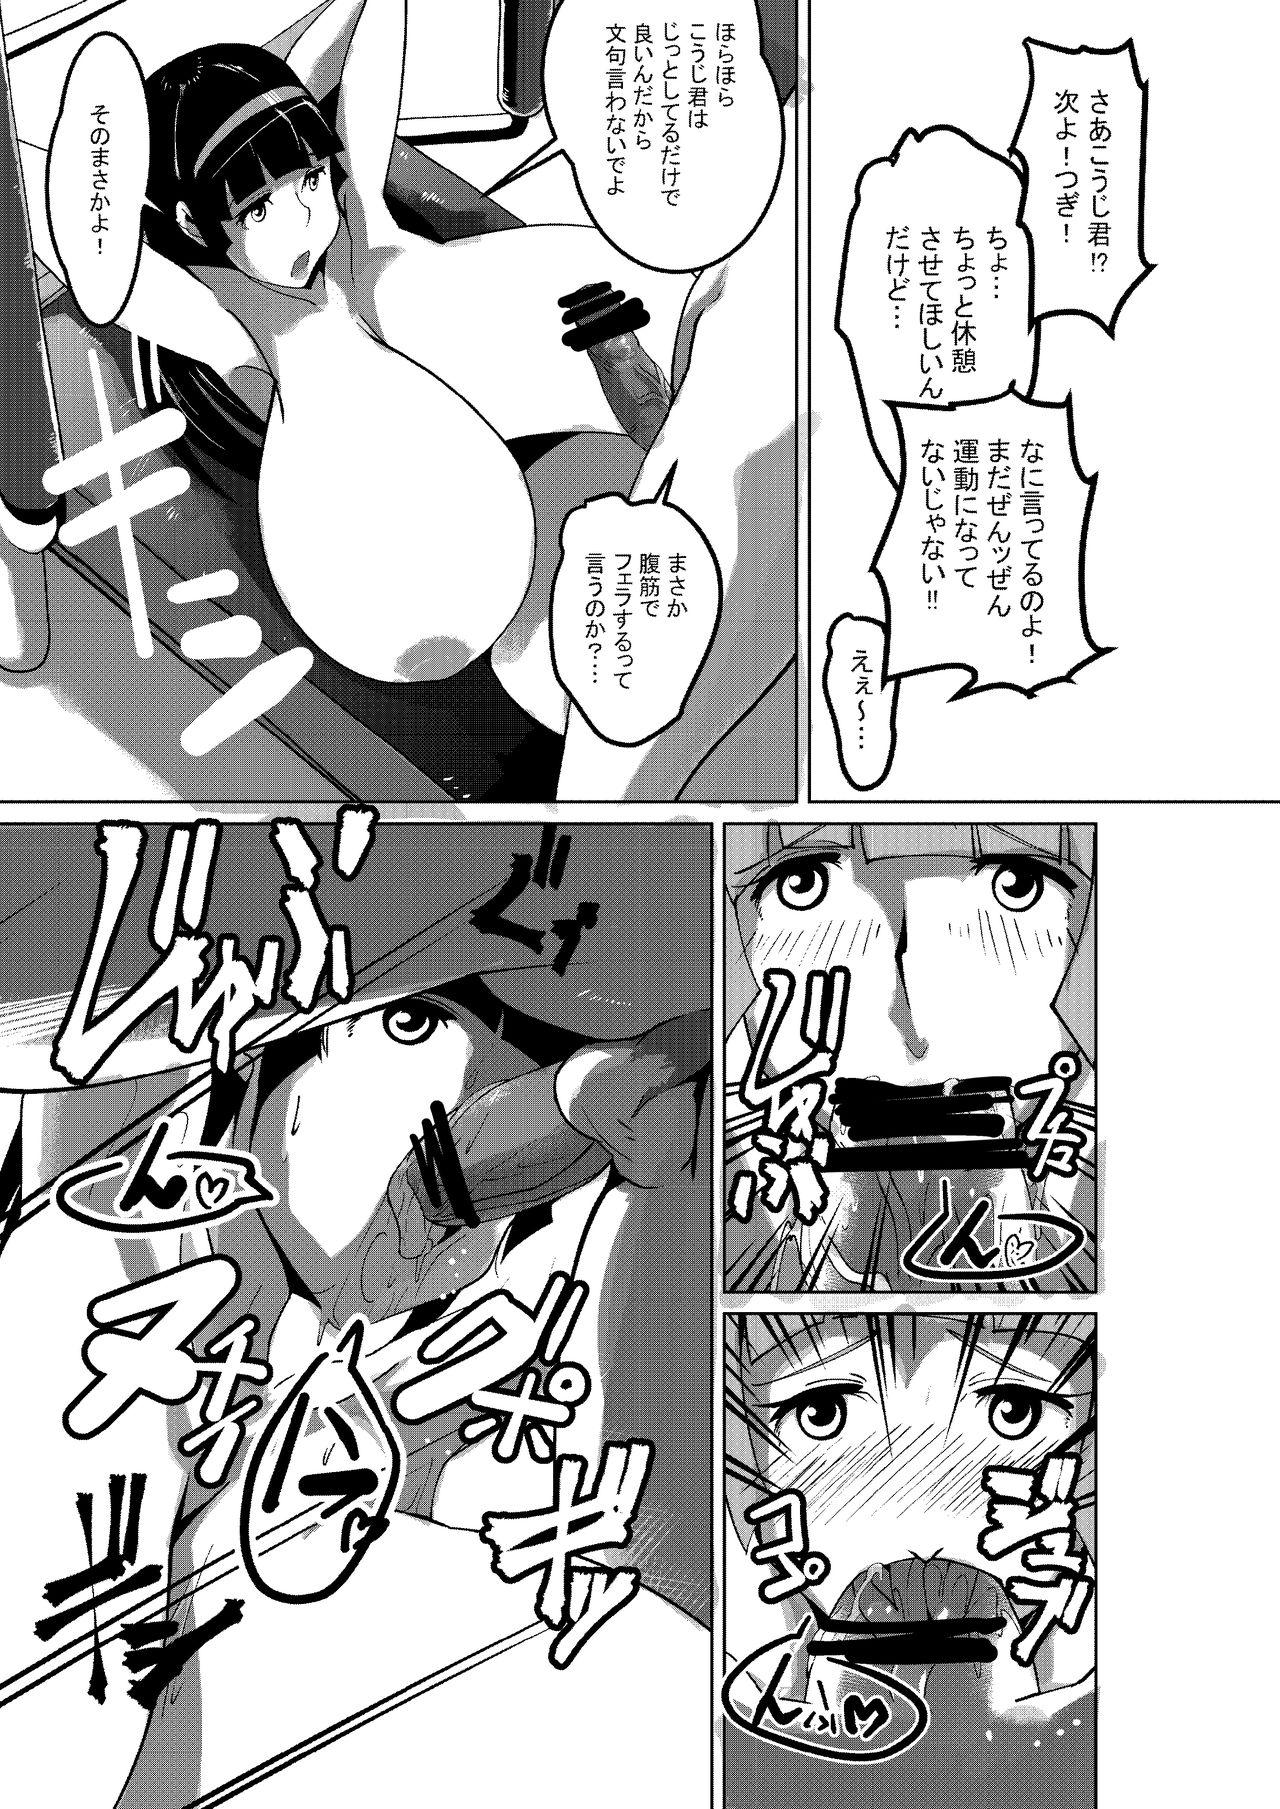 Suruba Sayaka no Diet Z Keikaku - Mazinger z Pickup - Page 9